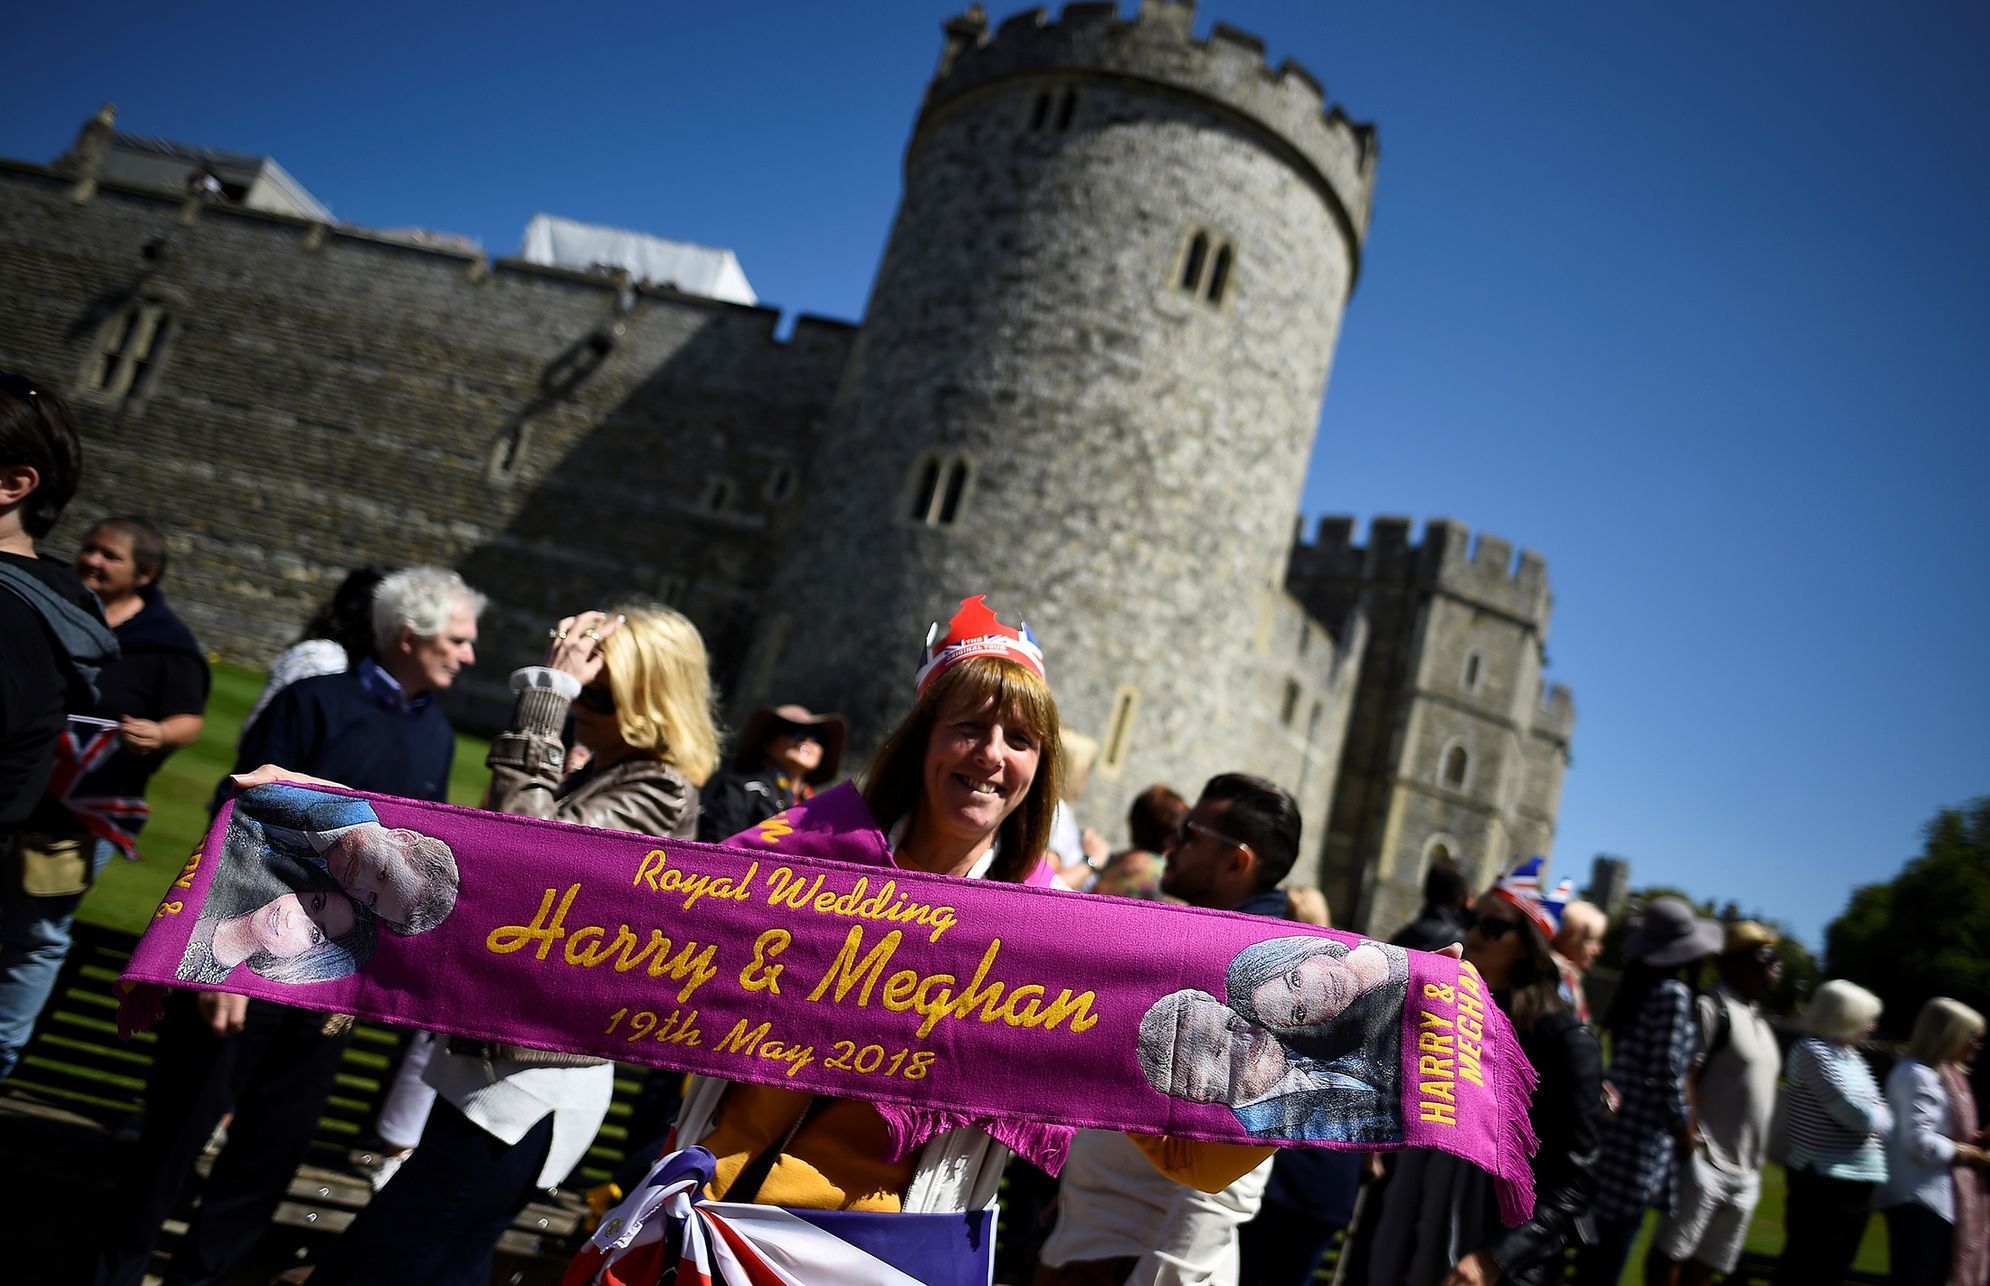 FOTOGALERIE / Přípravy na královskou svatbu / Princ Harry a Meghan Markle / Reuters / 17